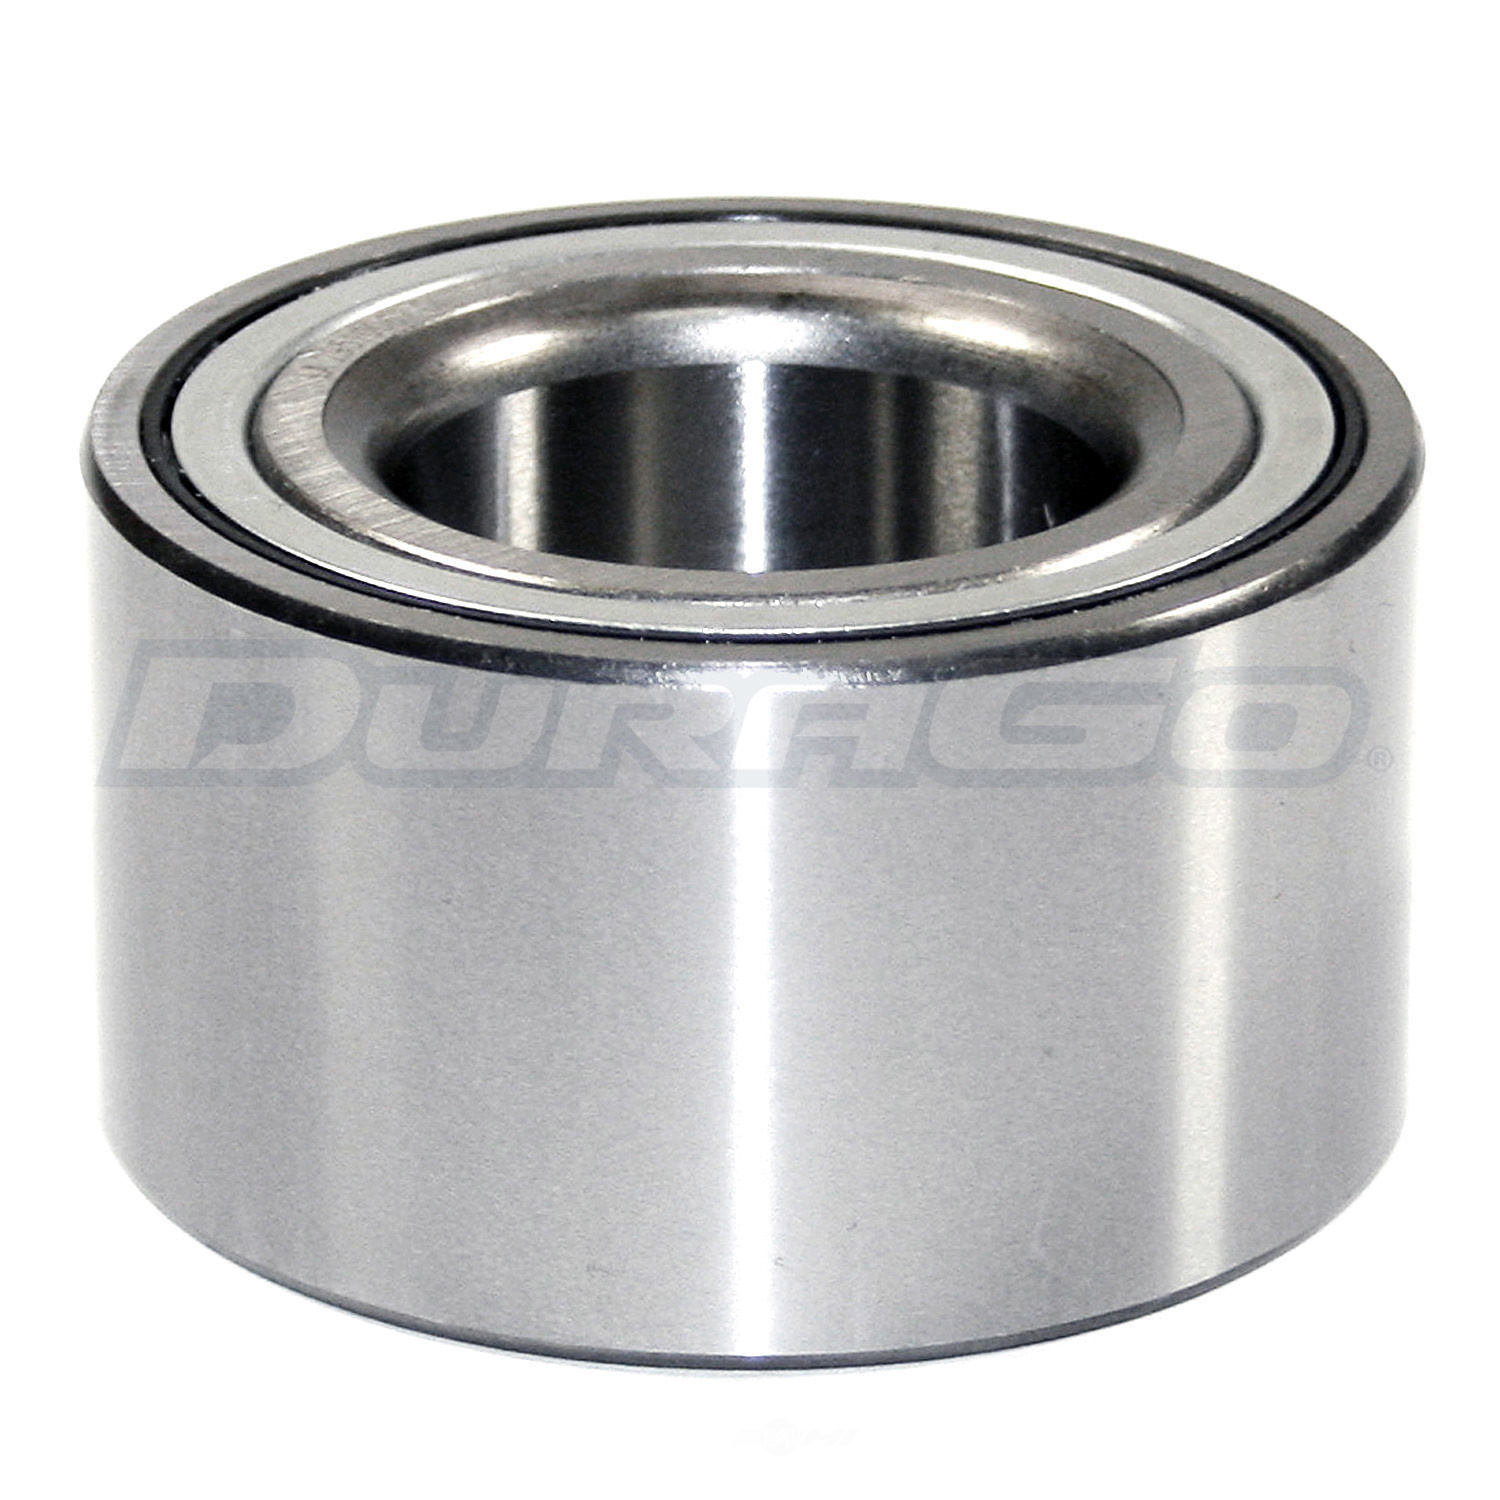 DURAGO - Wheel Bearing - D48 295-10062